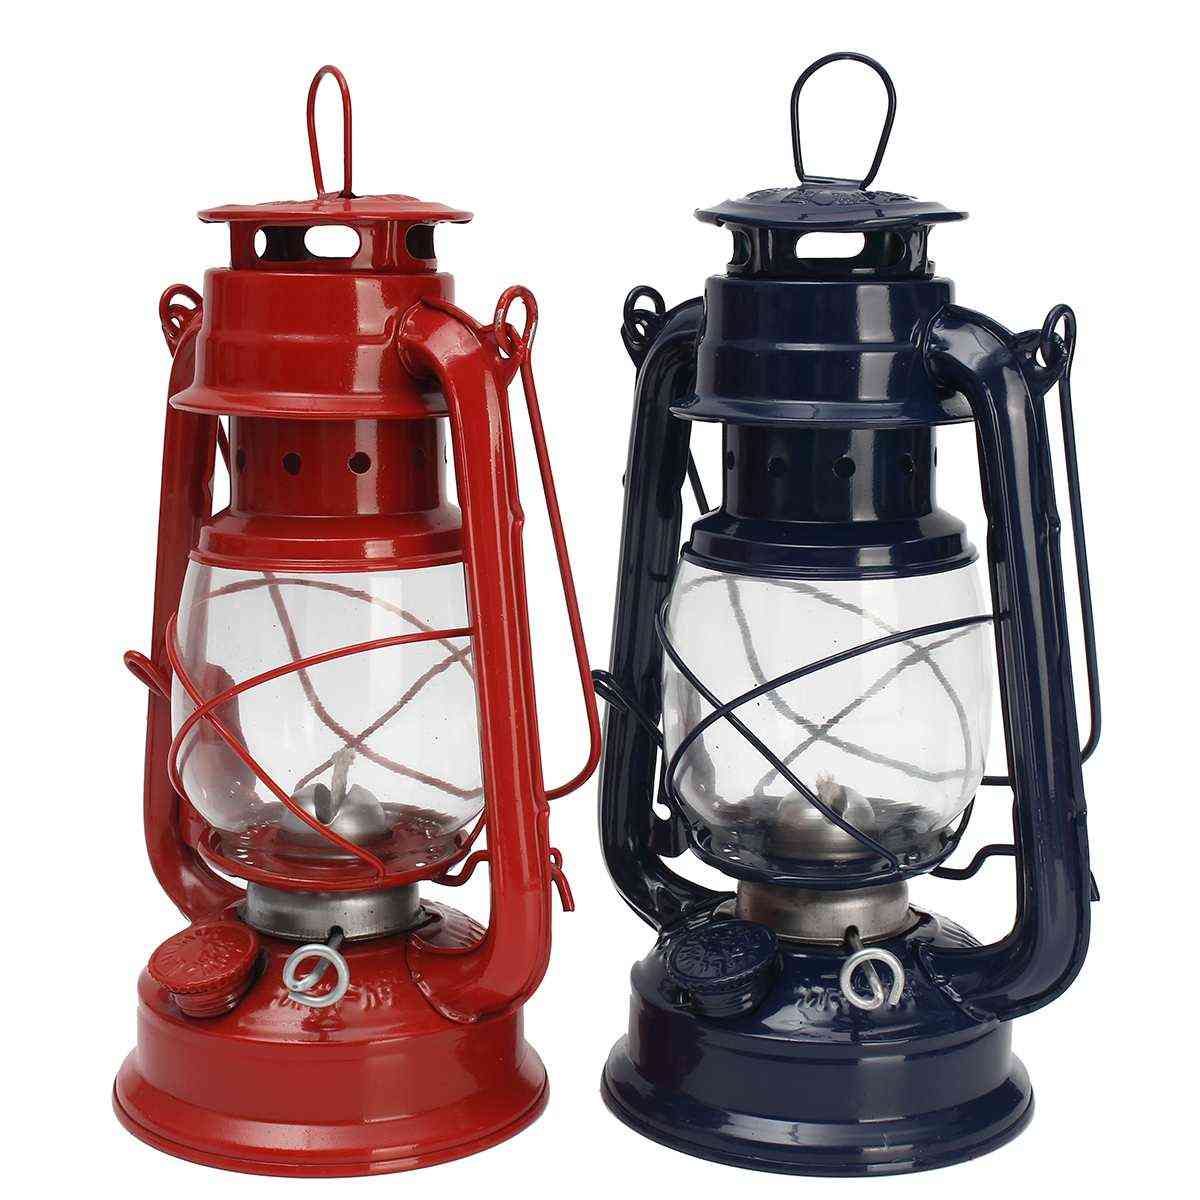 Vintage Kerosene Oil Lantern For Outdoor Camping/decor